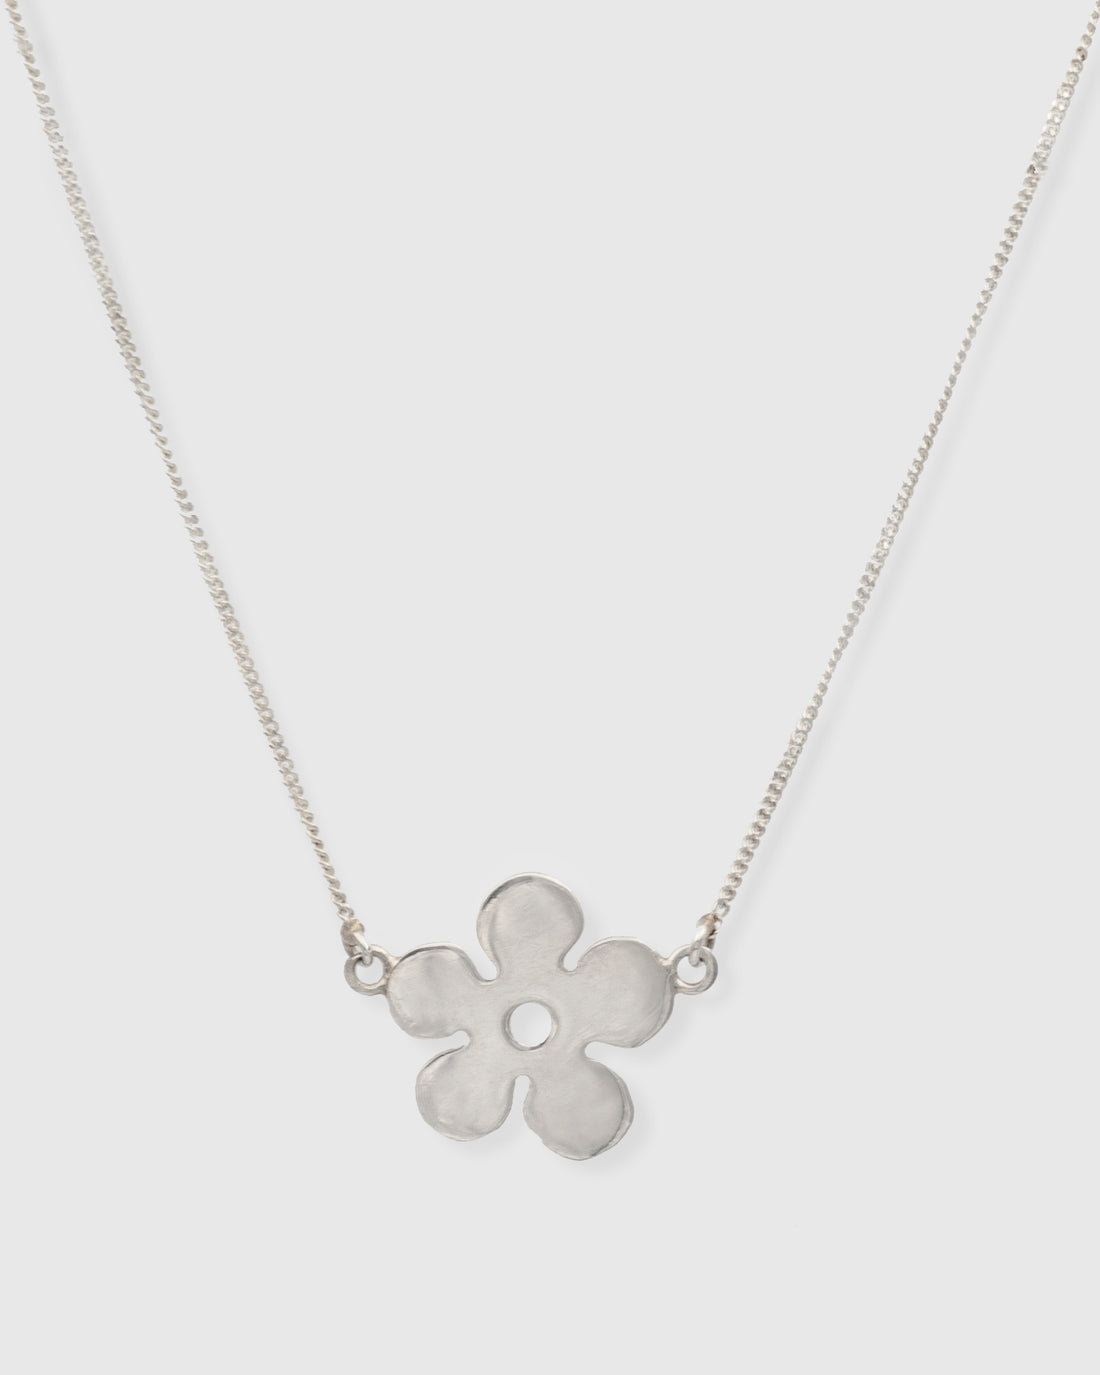 Small Daisy Necklace